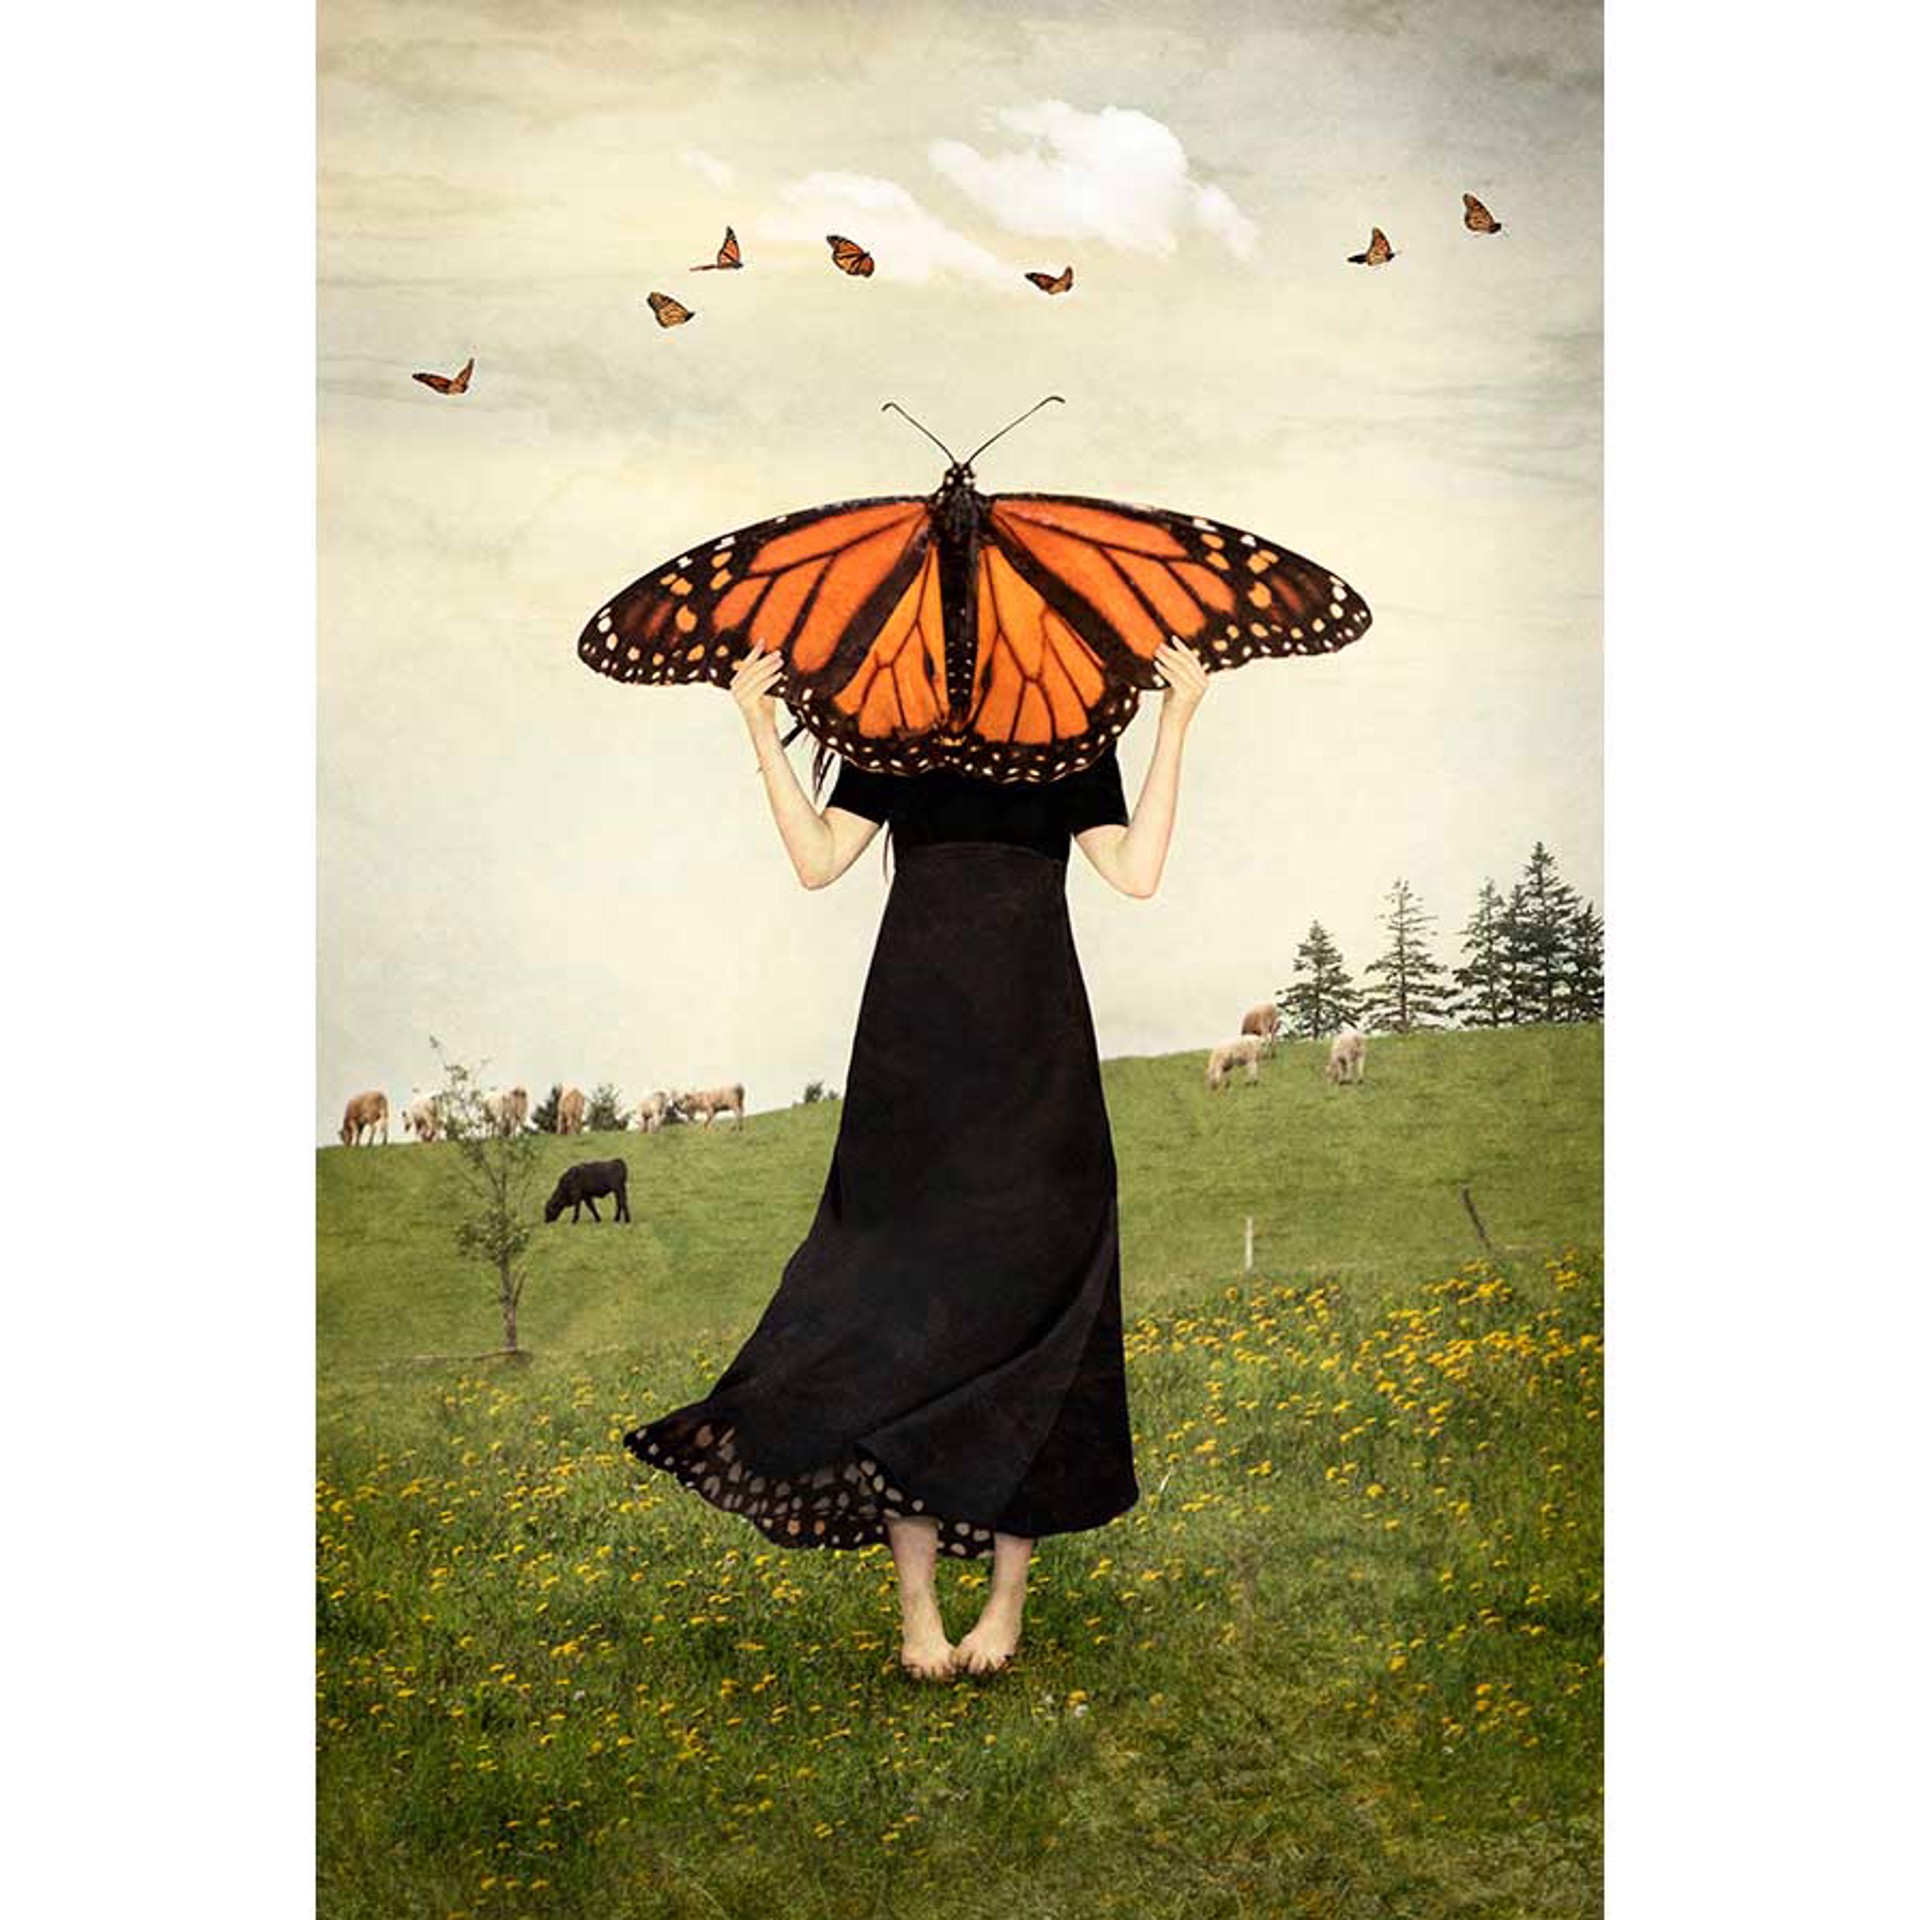 May Timid Wings Awaken by Elisabeth Ladwig